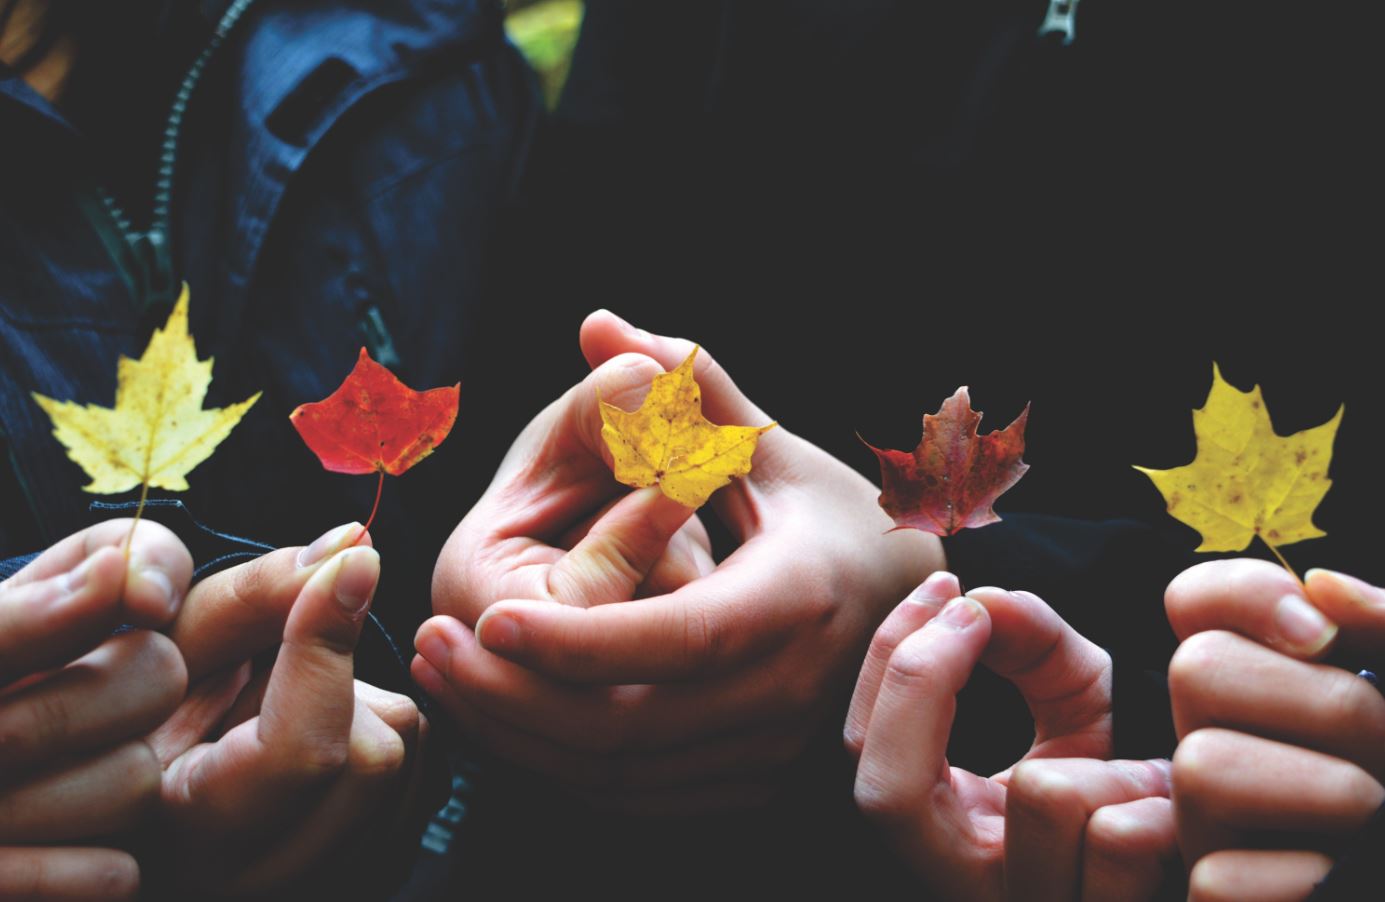 Viele Hände halten jeweils ein Blatt in unterschiedlichen Herbstfarben